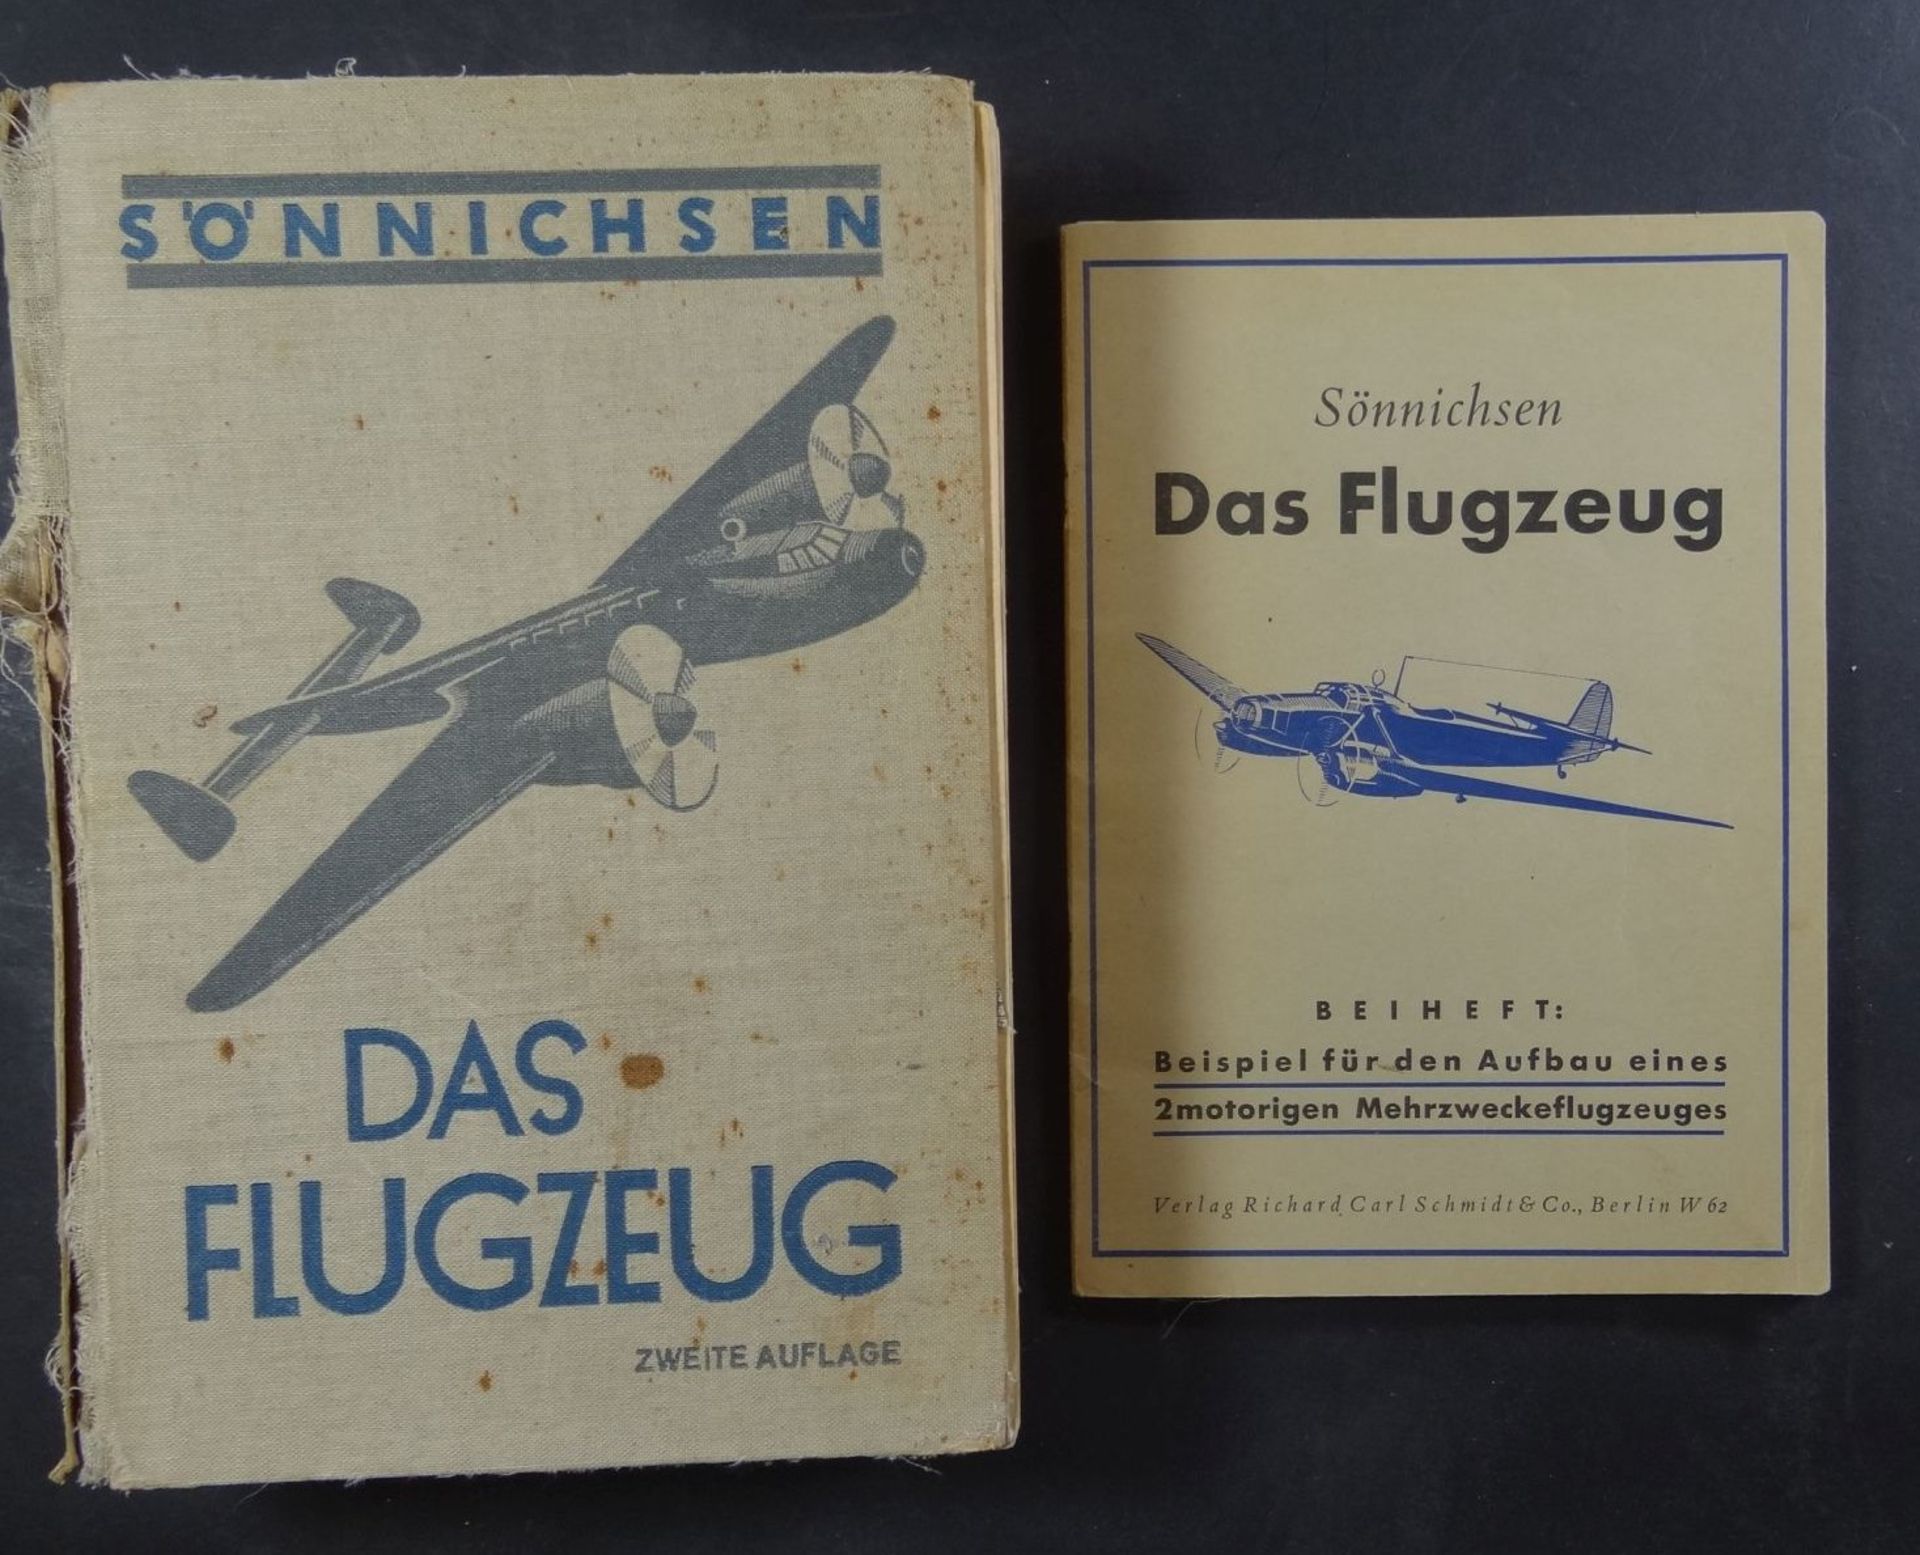 Sönnichsen, "Flugzeuge" 1941, 2.Auflage, mit Beiheft, Buchrücken lose, reich illustriert und mit